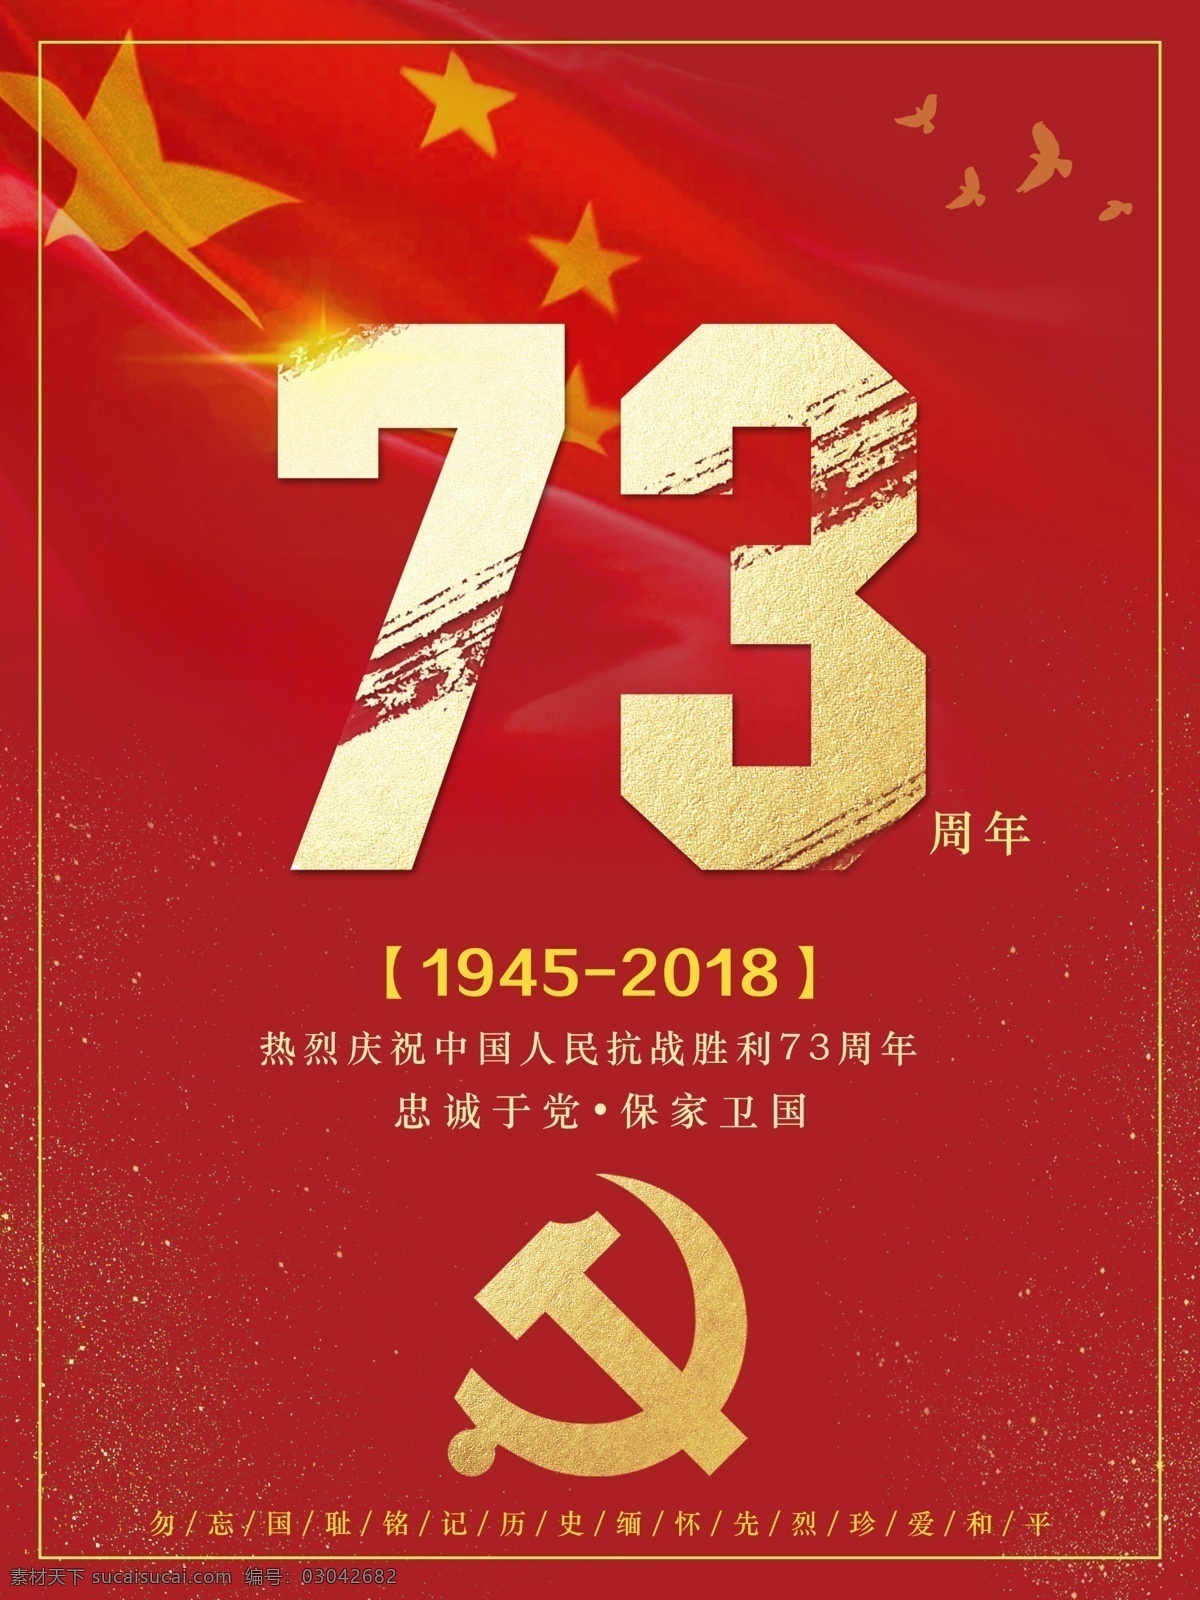 简约 大气 中国 人民 抗战 胜利 周年 大红 喜庆 海报 73周年 抗战胜利海报 73周年海报